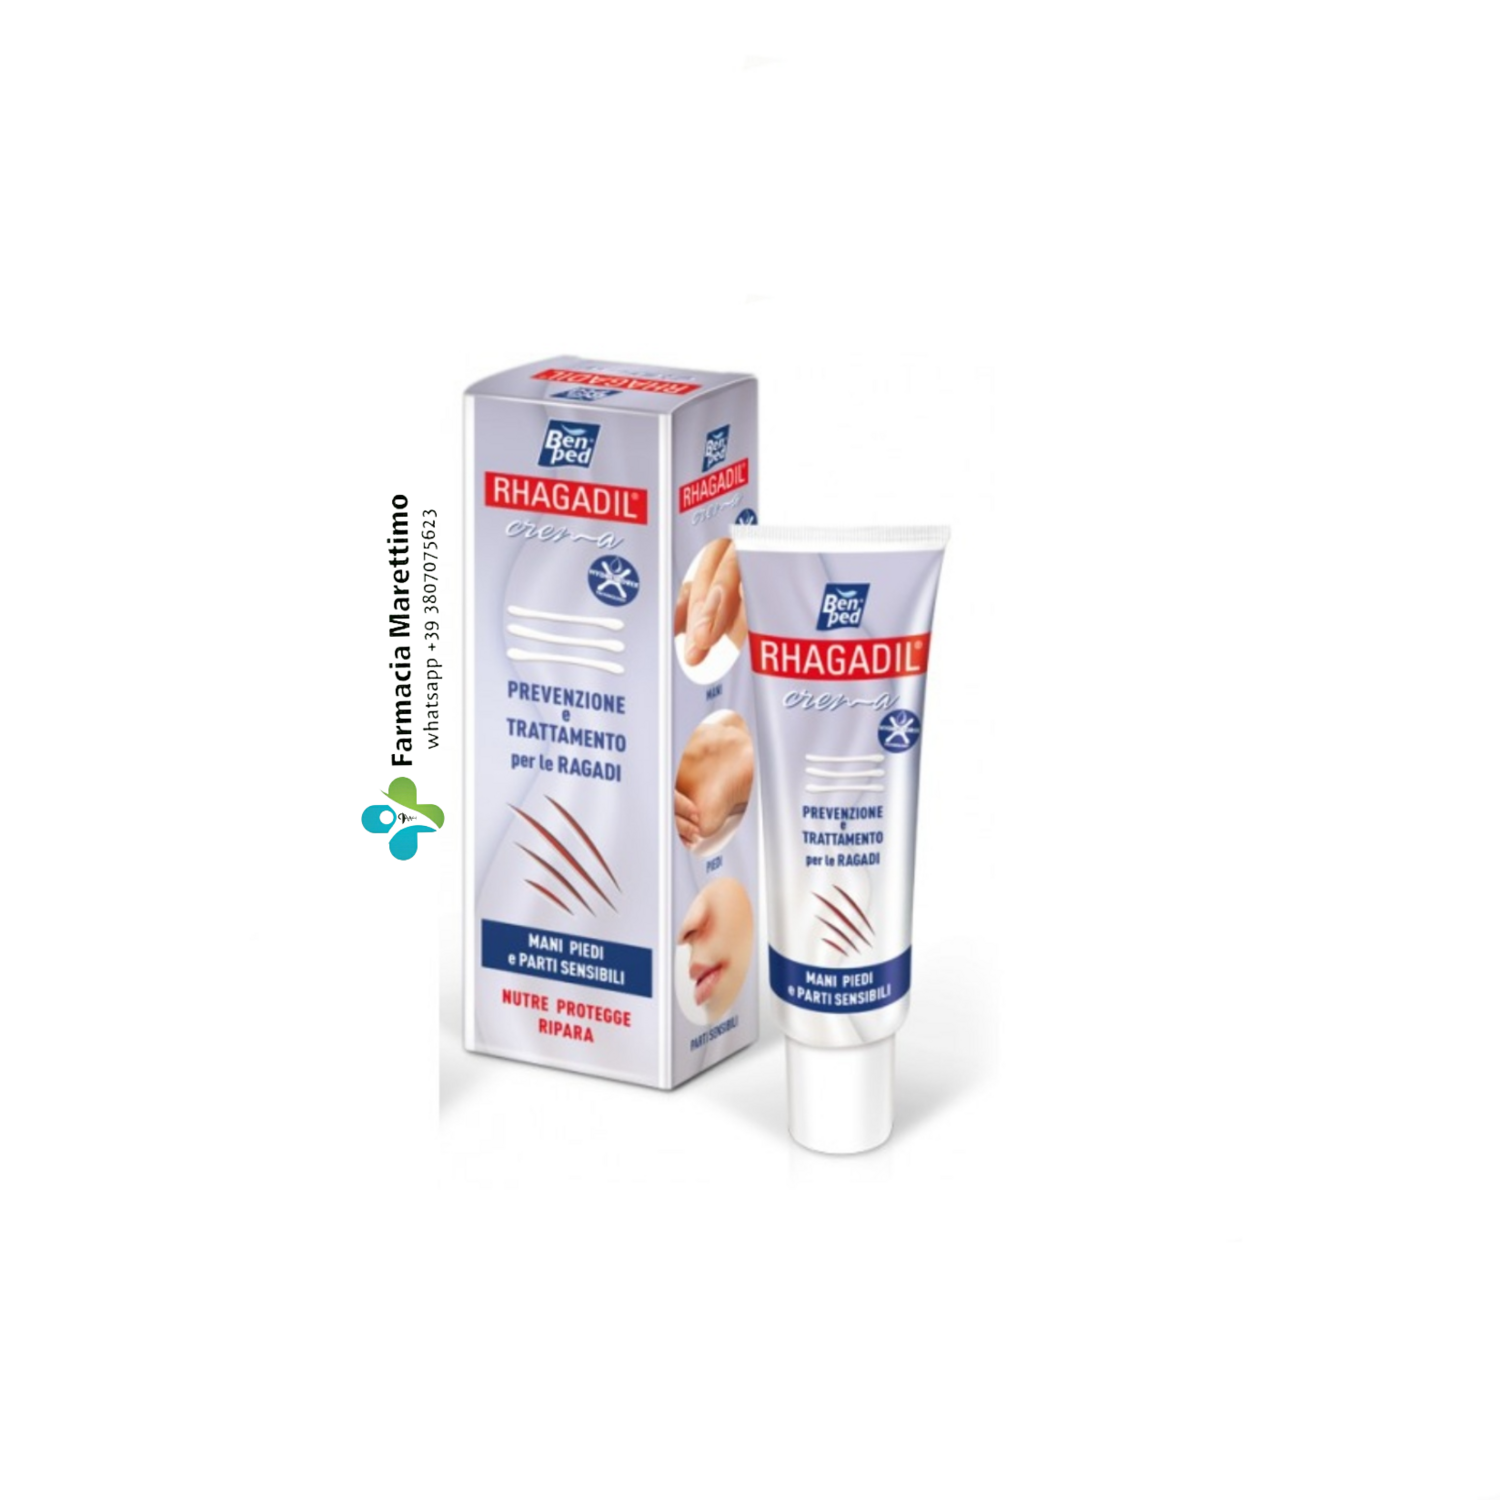 Rhagadil Crema Prevenzione e Cura Ragadi 50ml è un prodotto appositamente formulato per prevenire e trattare le ragadi, screpolature, ect..